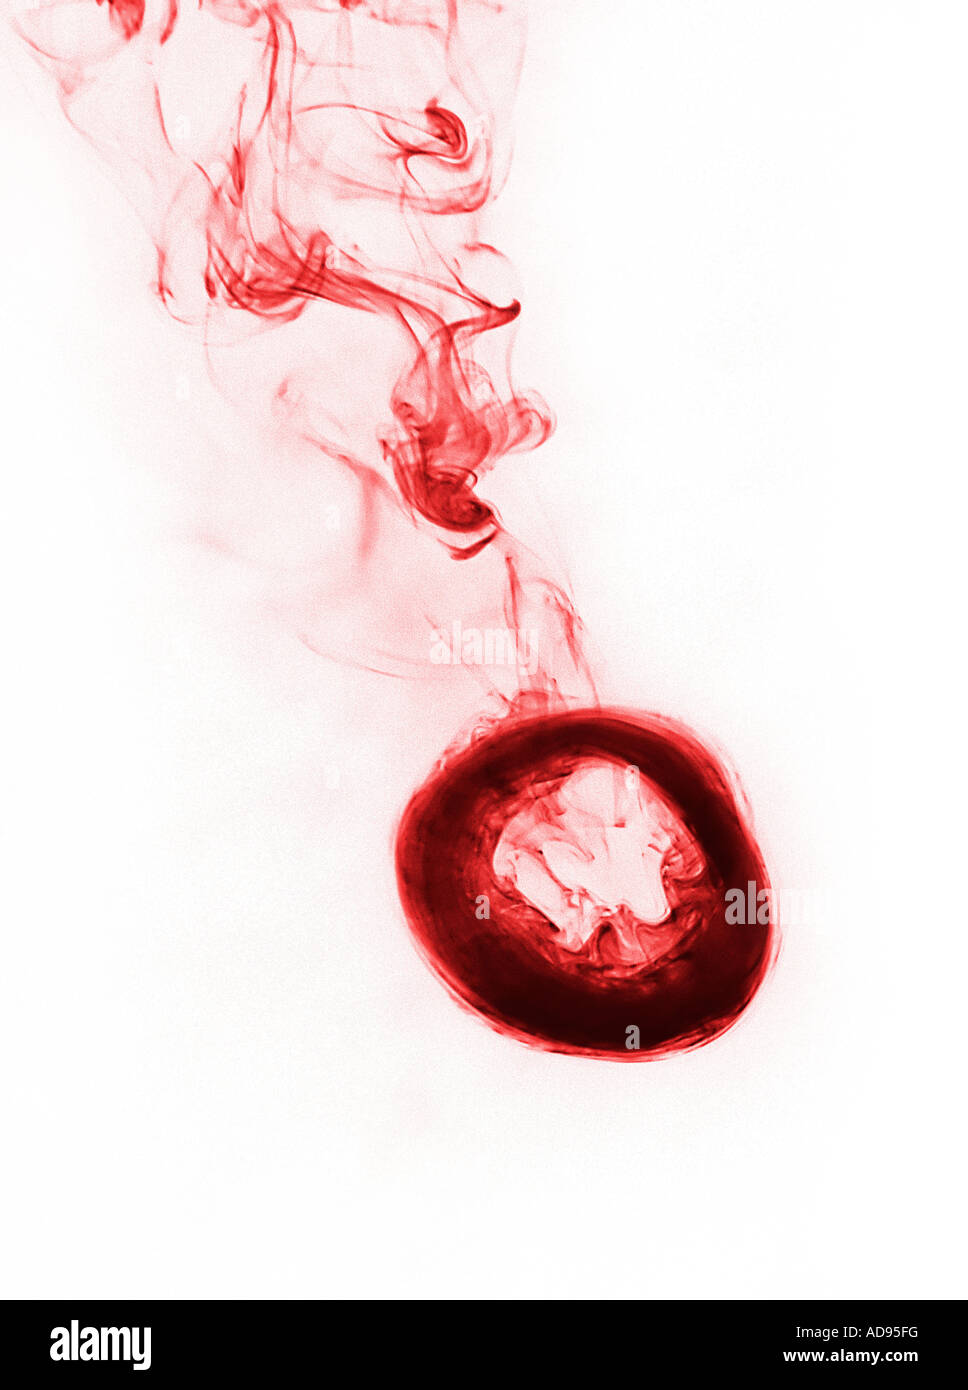 Photographie d'un anneau de fumée étant donné un traitement graphique Banque D'Images